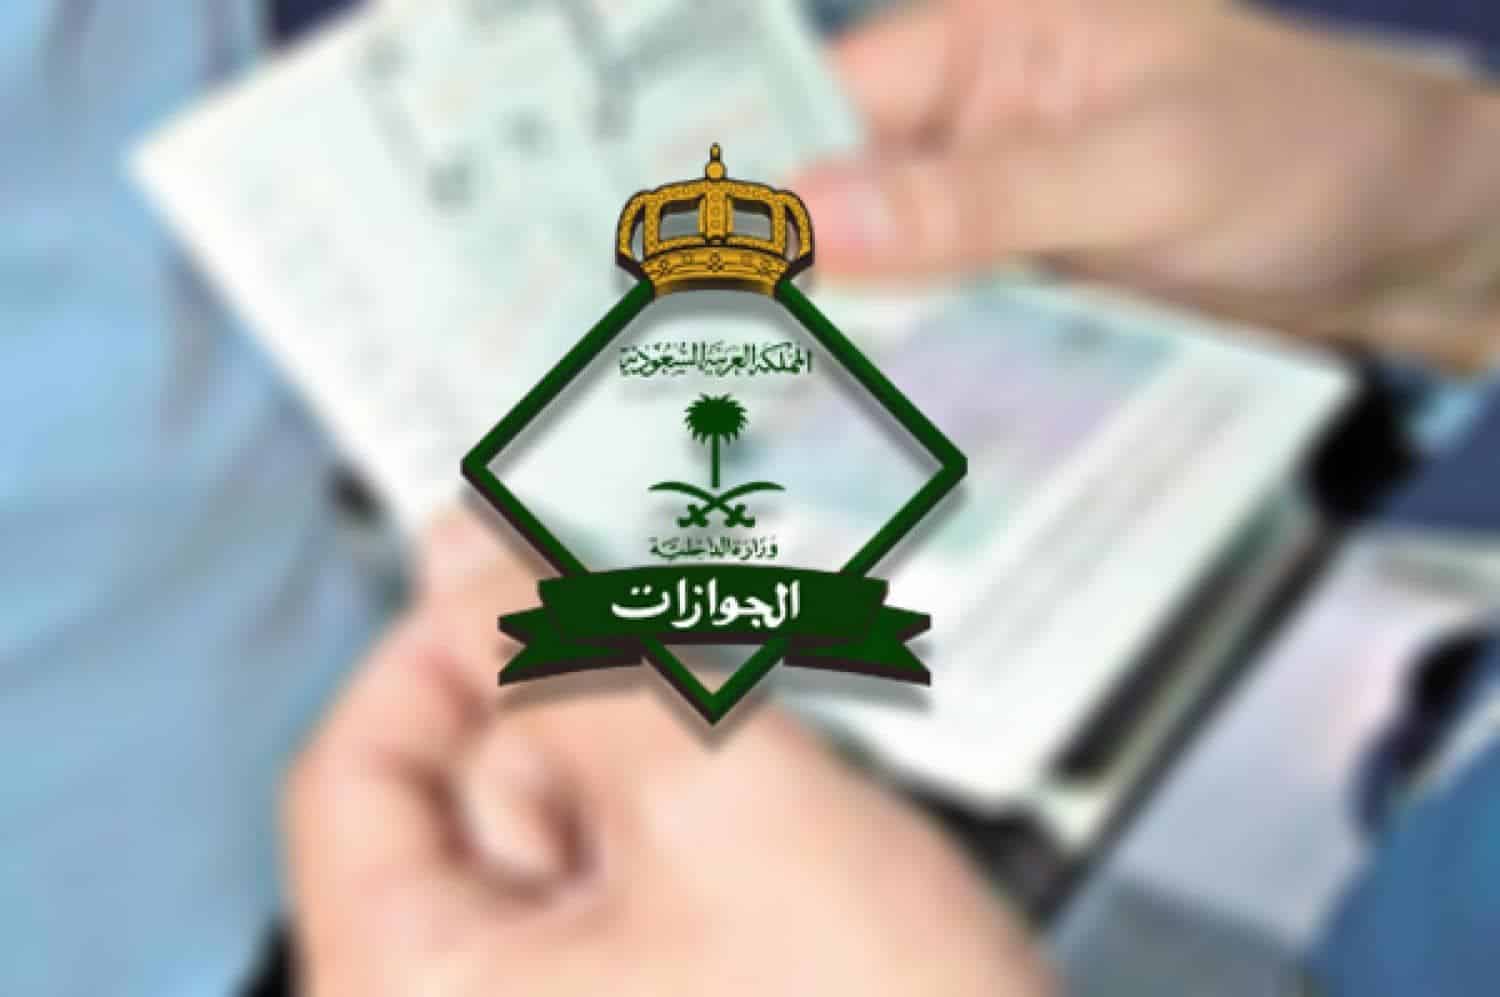 استعلام عن نقل كفالة في الجوازات السعودية وحالات نقلها بدون موافقة الكفيل